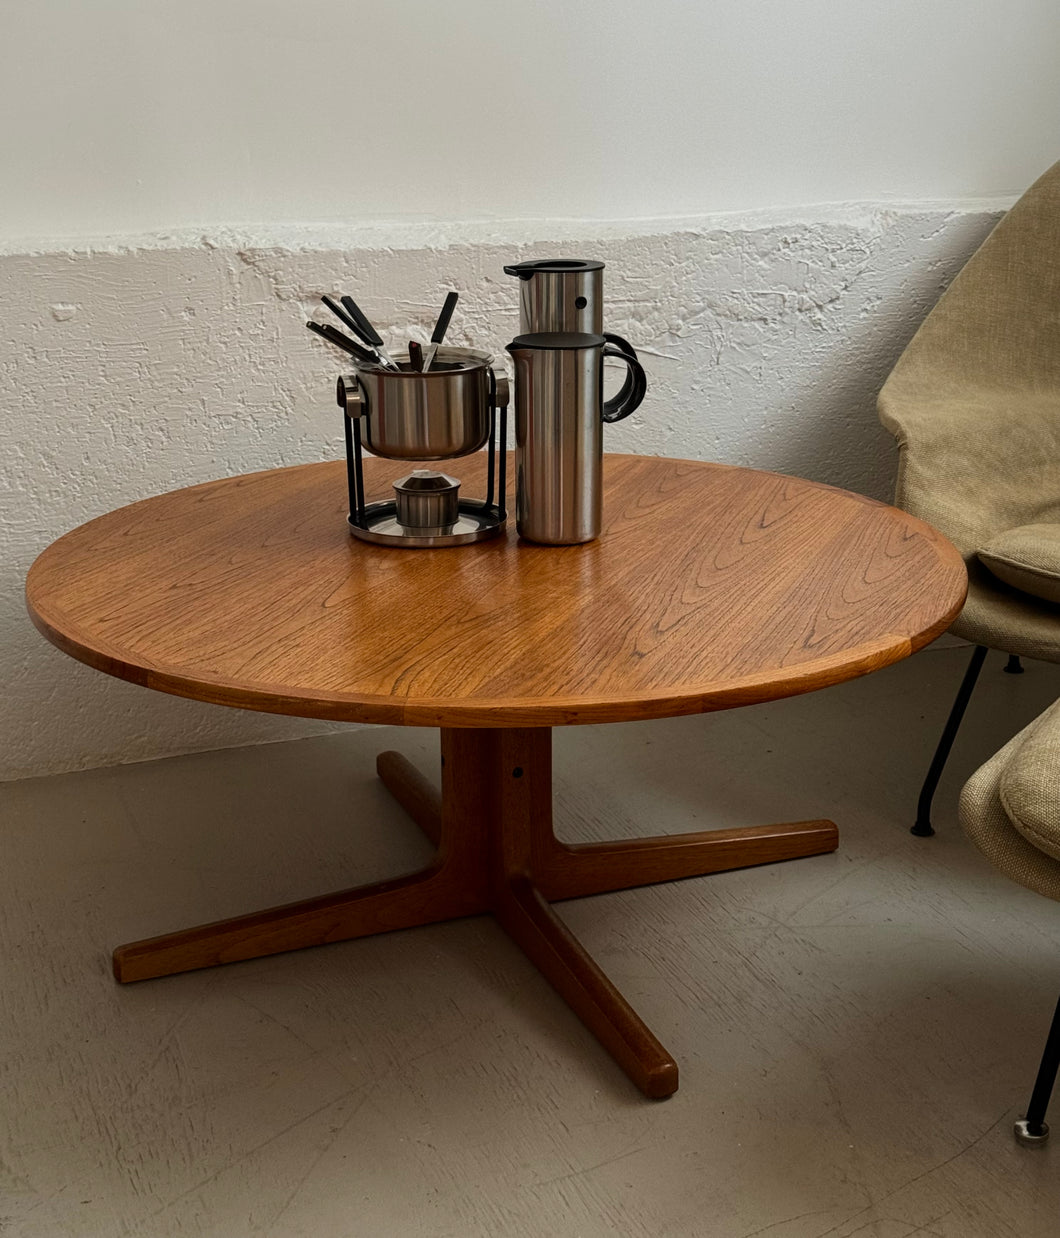 Round teak coffee table by Hans C. Andersen